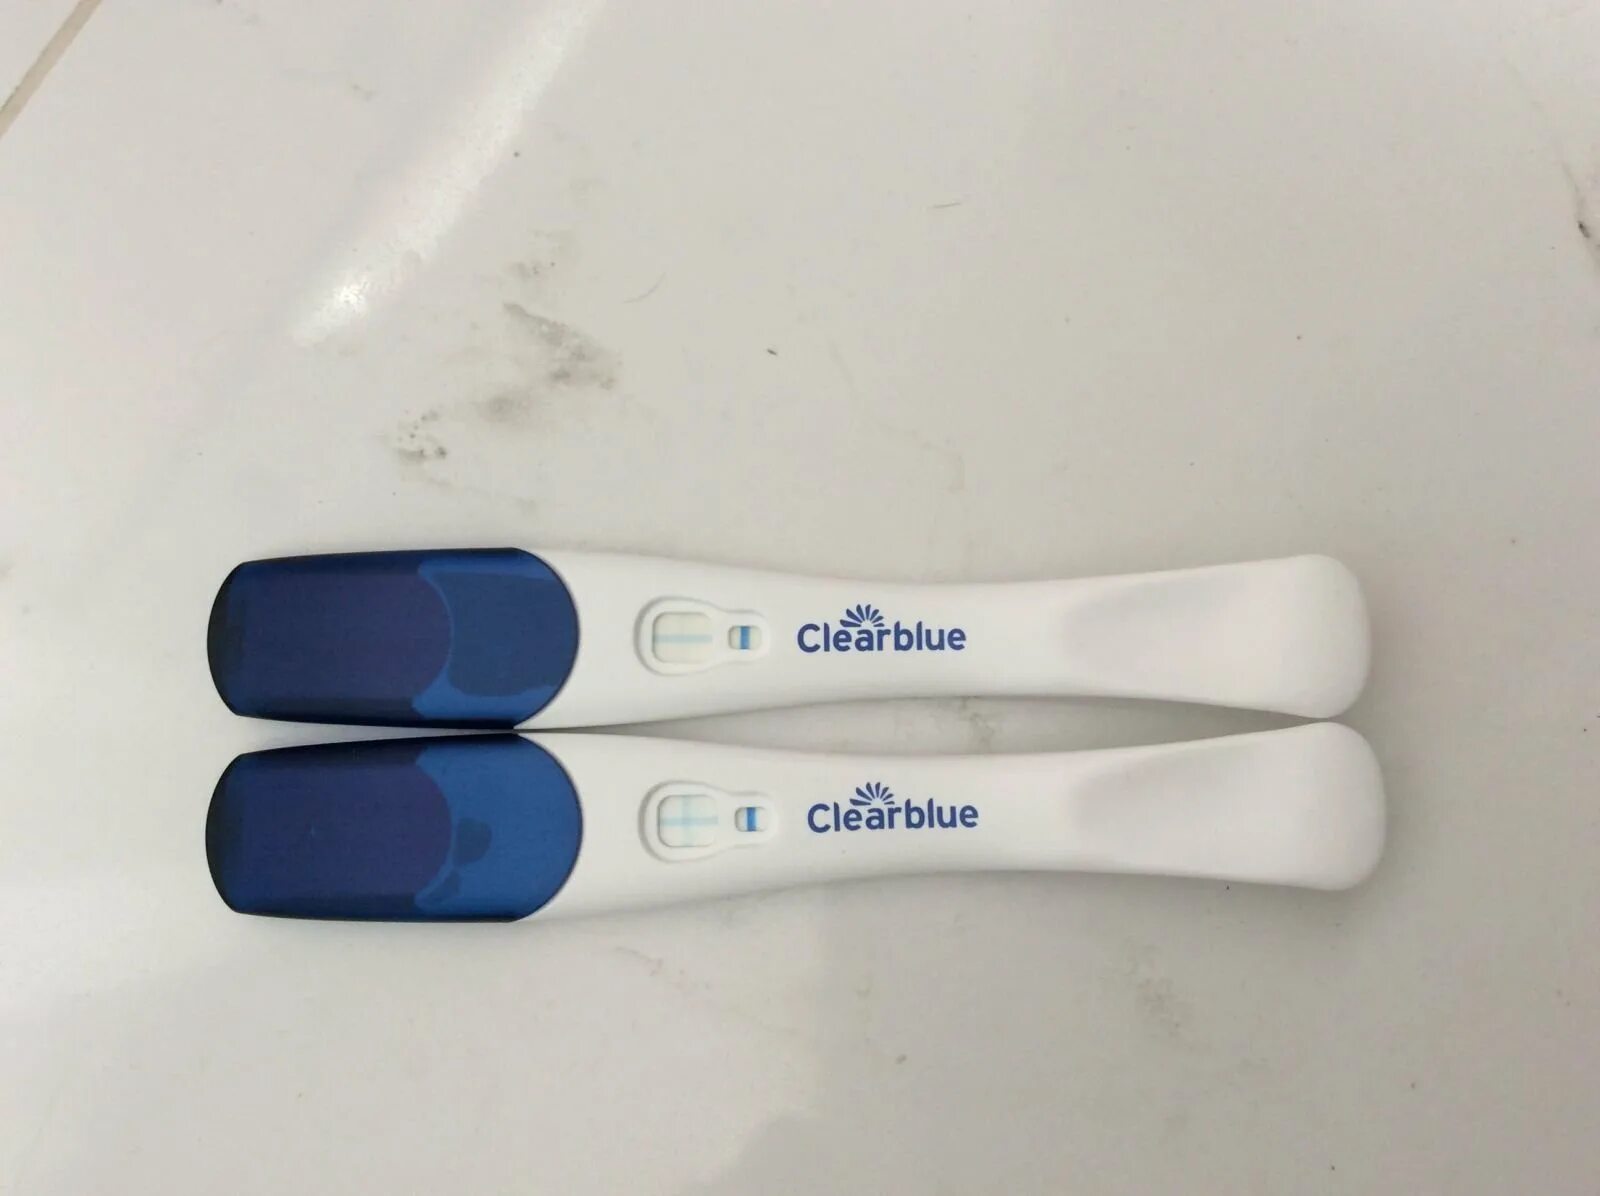 Клеар блю тест на беременность до задержки. Клеар Блю плюс 13 ДПО. Clearblue тест на беременность до задержки 11 ДПО. Тест клеар Блю за 5. Clearblue за 5 дней тест 13 ДПО.